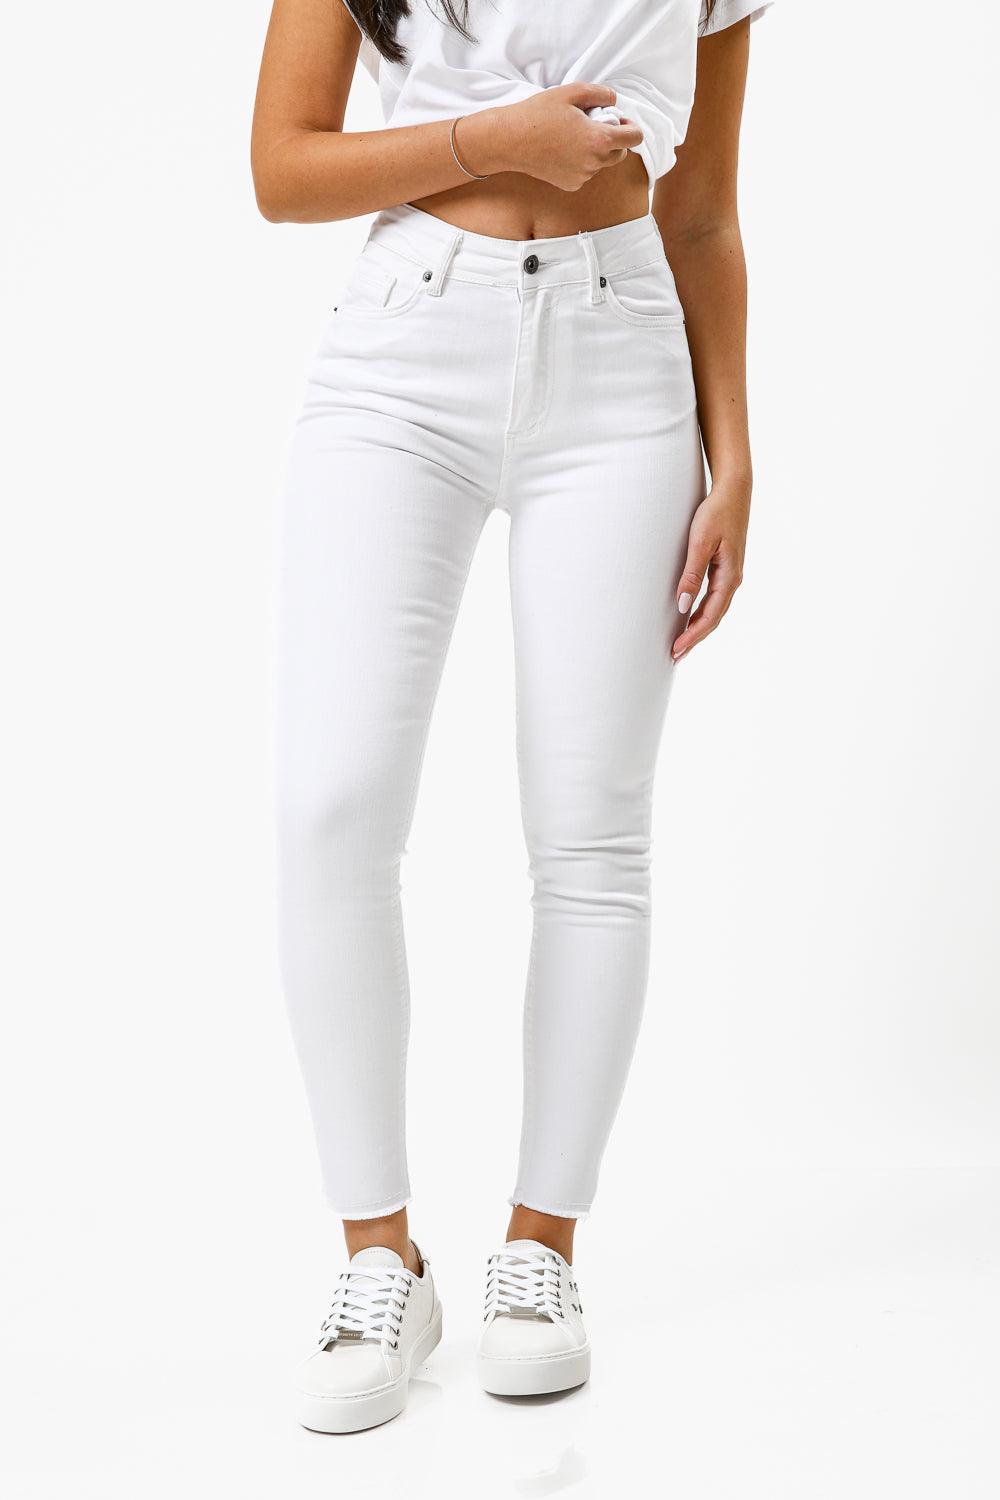 מכנס ג'ינס SKINNY בצבע לבן - MASHBIR//365